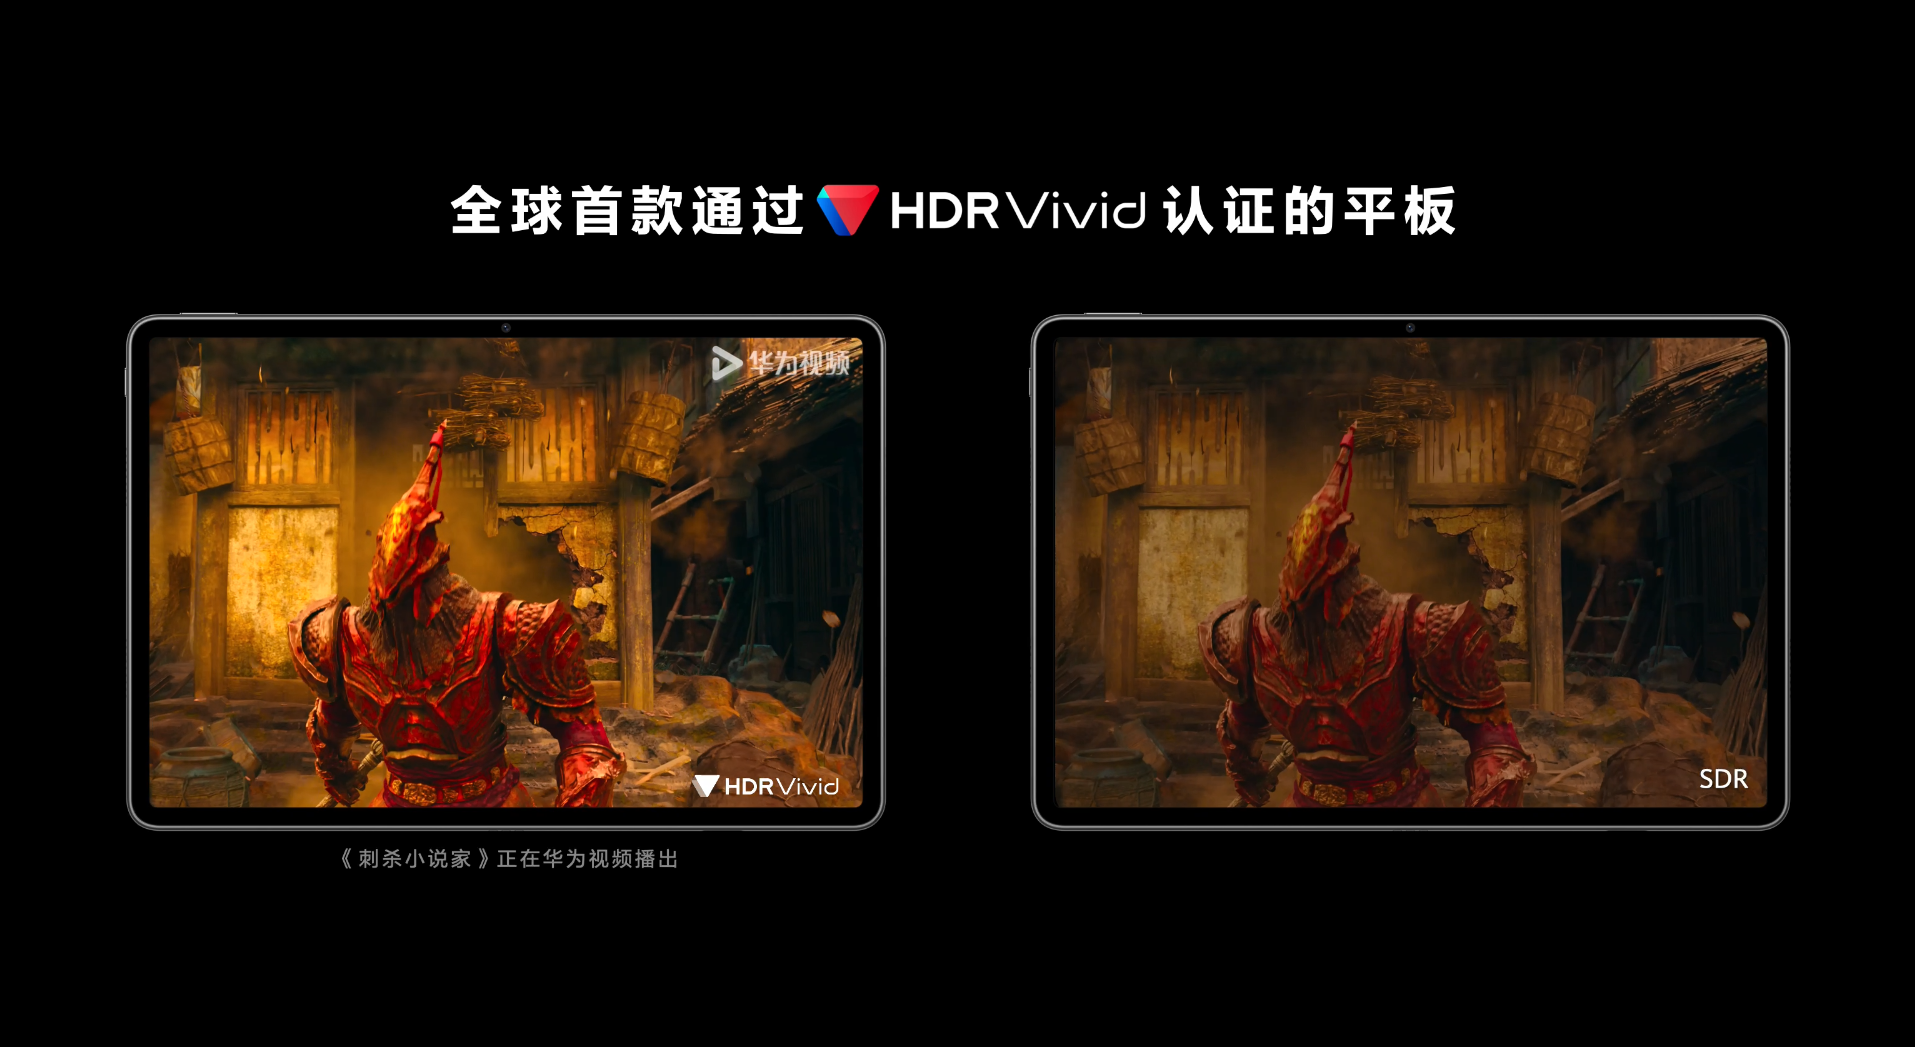 全球首款通过HDR Vivid认证的平板发布，华为视频全场景观影体验再升级